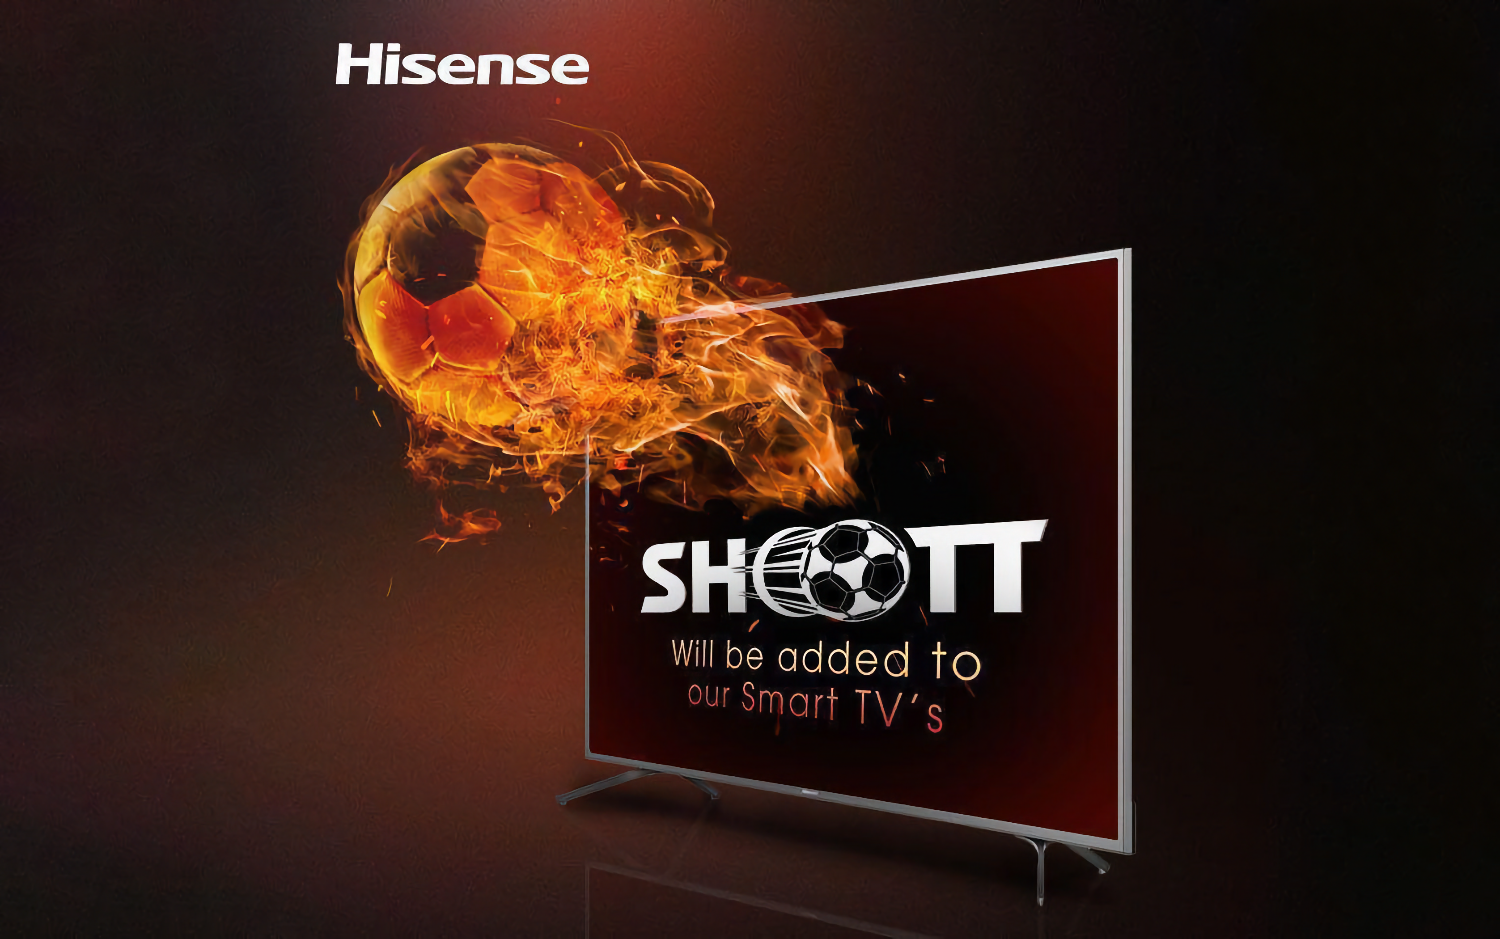 У Hisense появились 65- и 75-дюймовые модели телевизоров с ценой от 108 тыс рублей